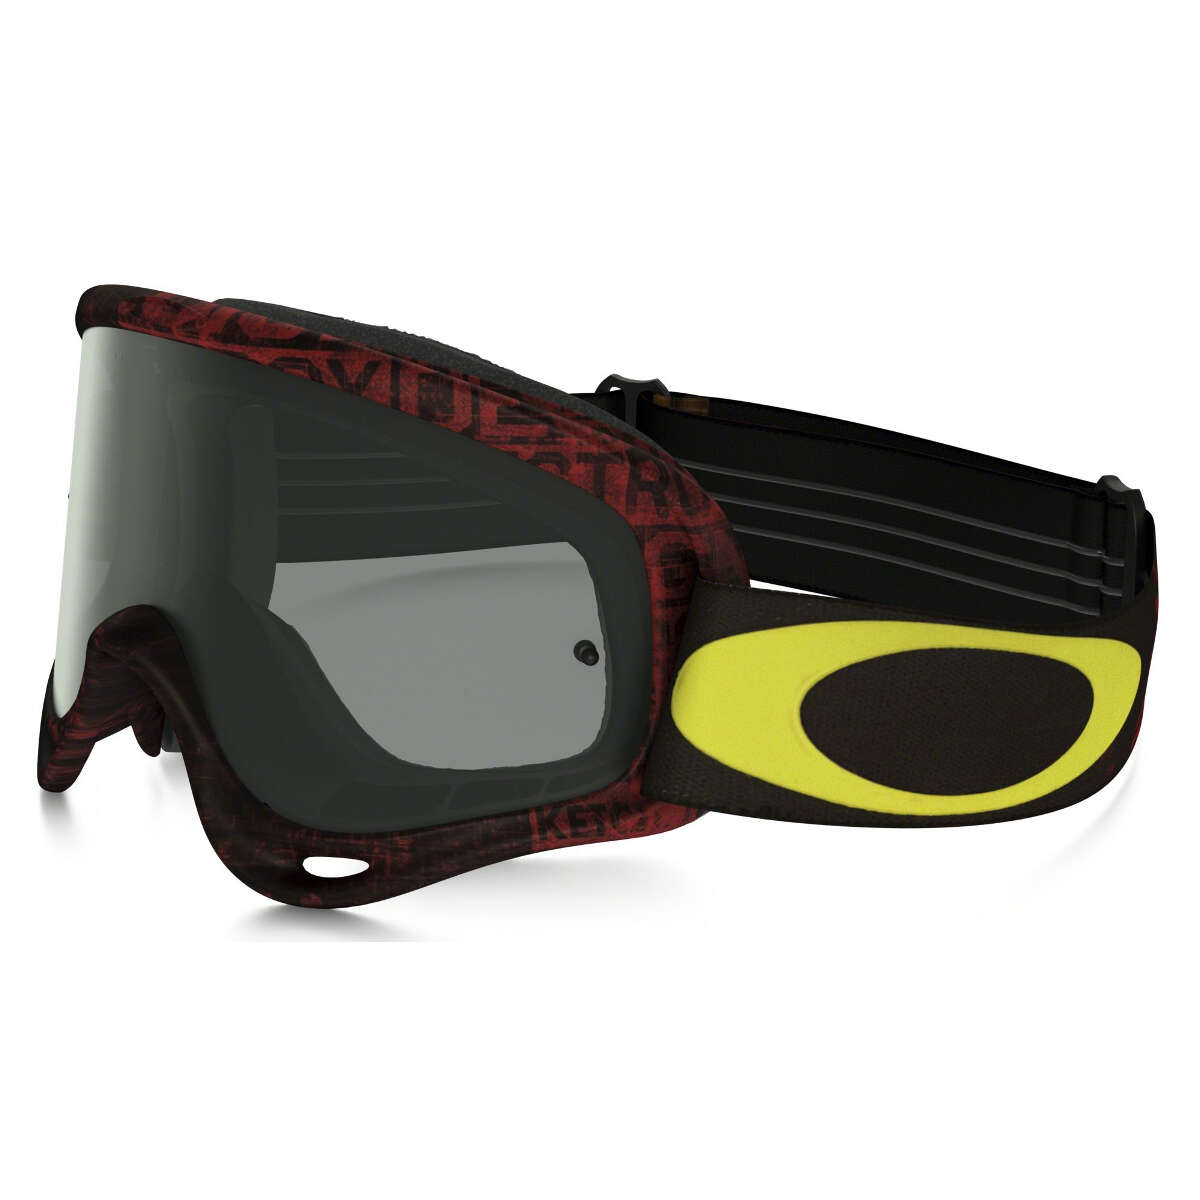 Oakley Crossbrille O Frame MX Distressed Tagline Red/Yellow - Dunkelgrau Anti-Fog